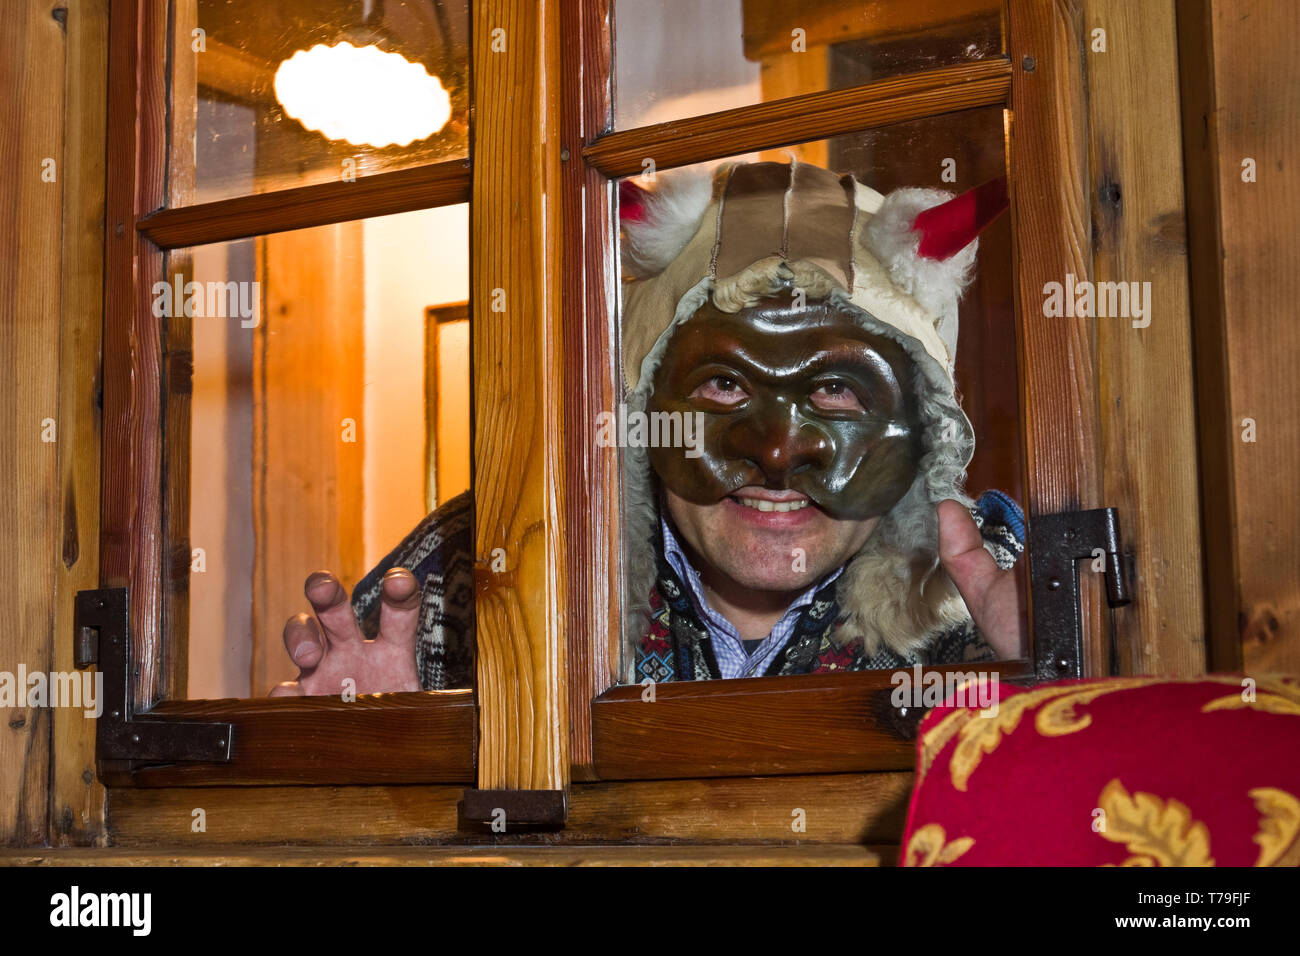 Bormio: Marcello Canclini, Esperto di Etnografia, storia locale e Folklore, indossa una delle Maschere del Carnevale bormino. [ENG] Bormio: Marcello Stockfoto